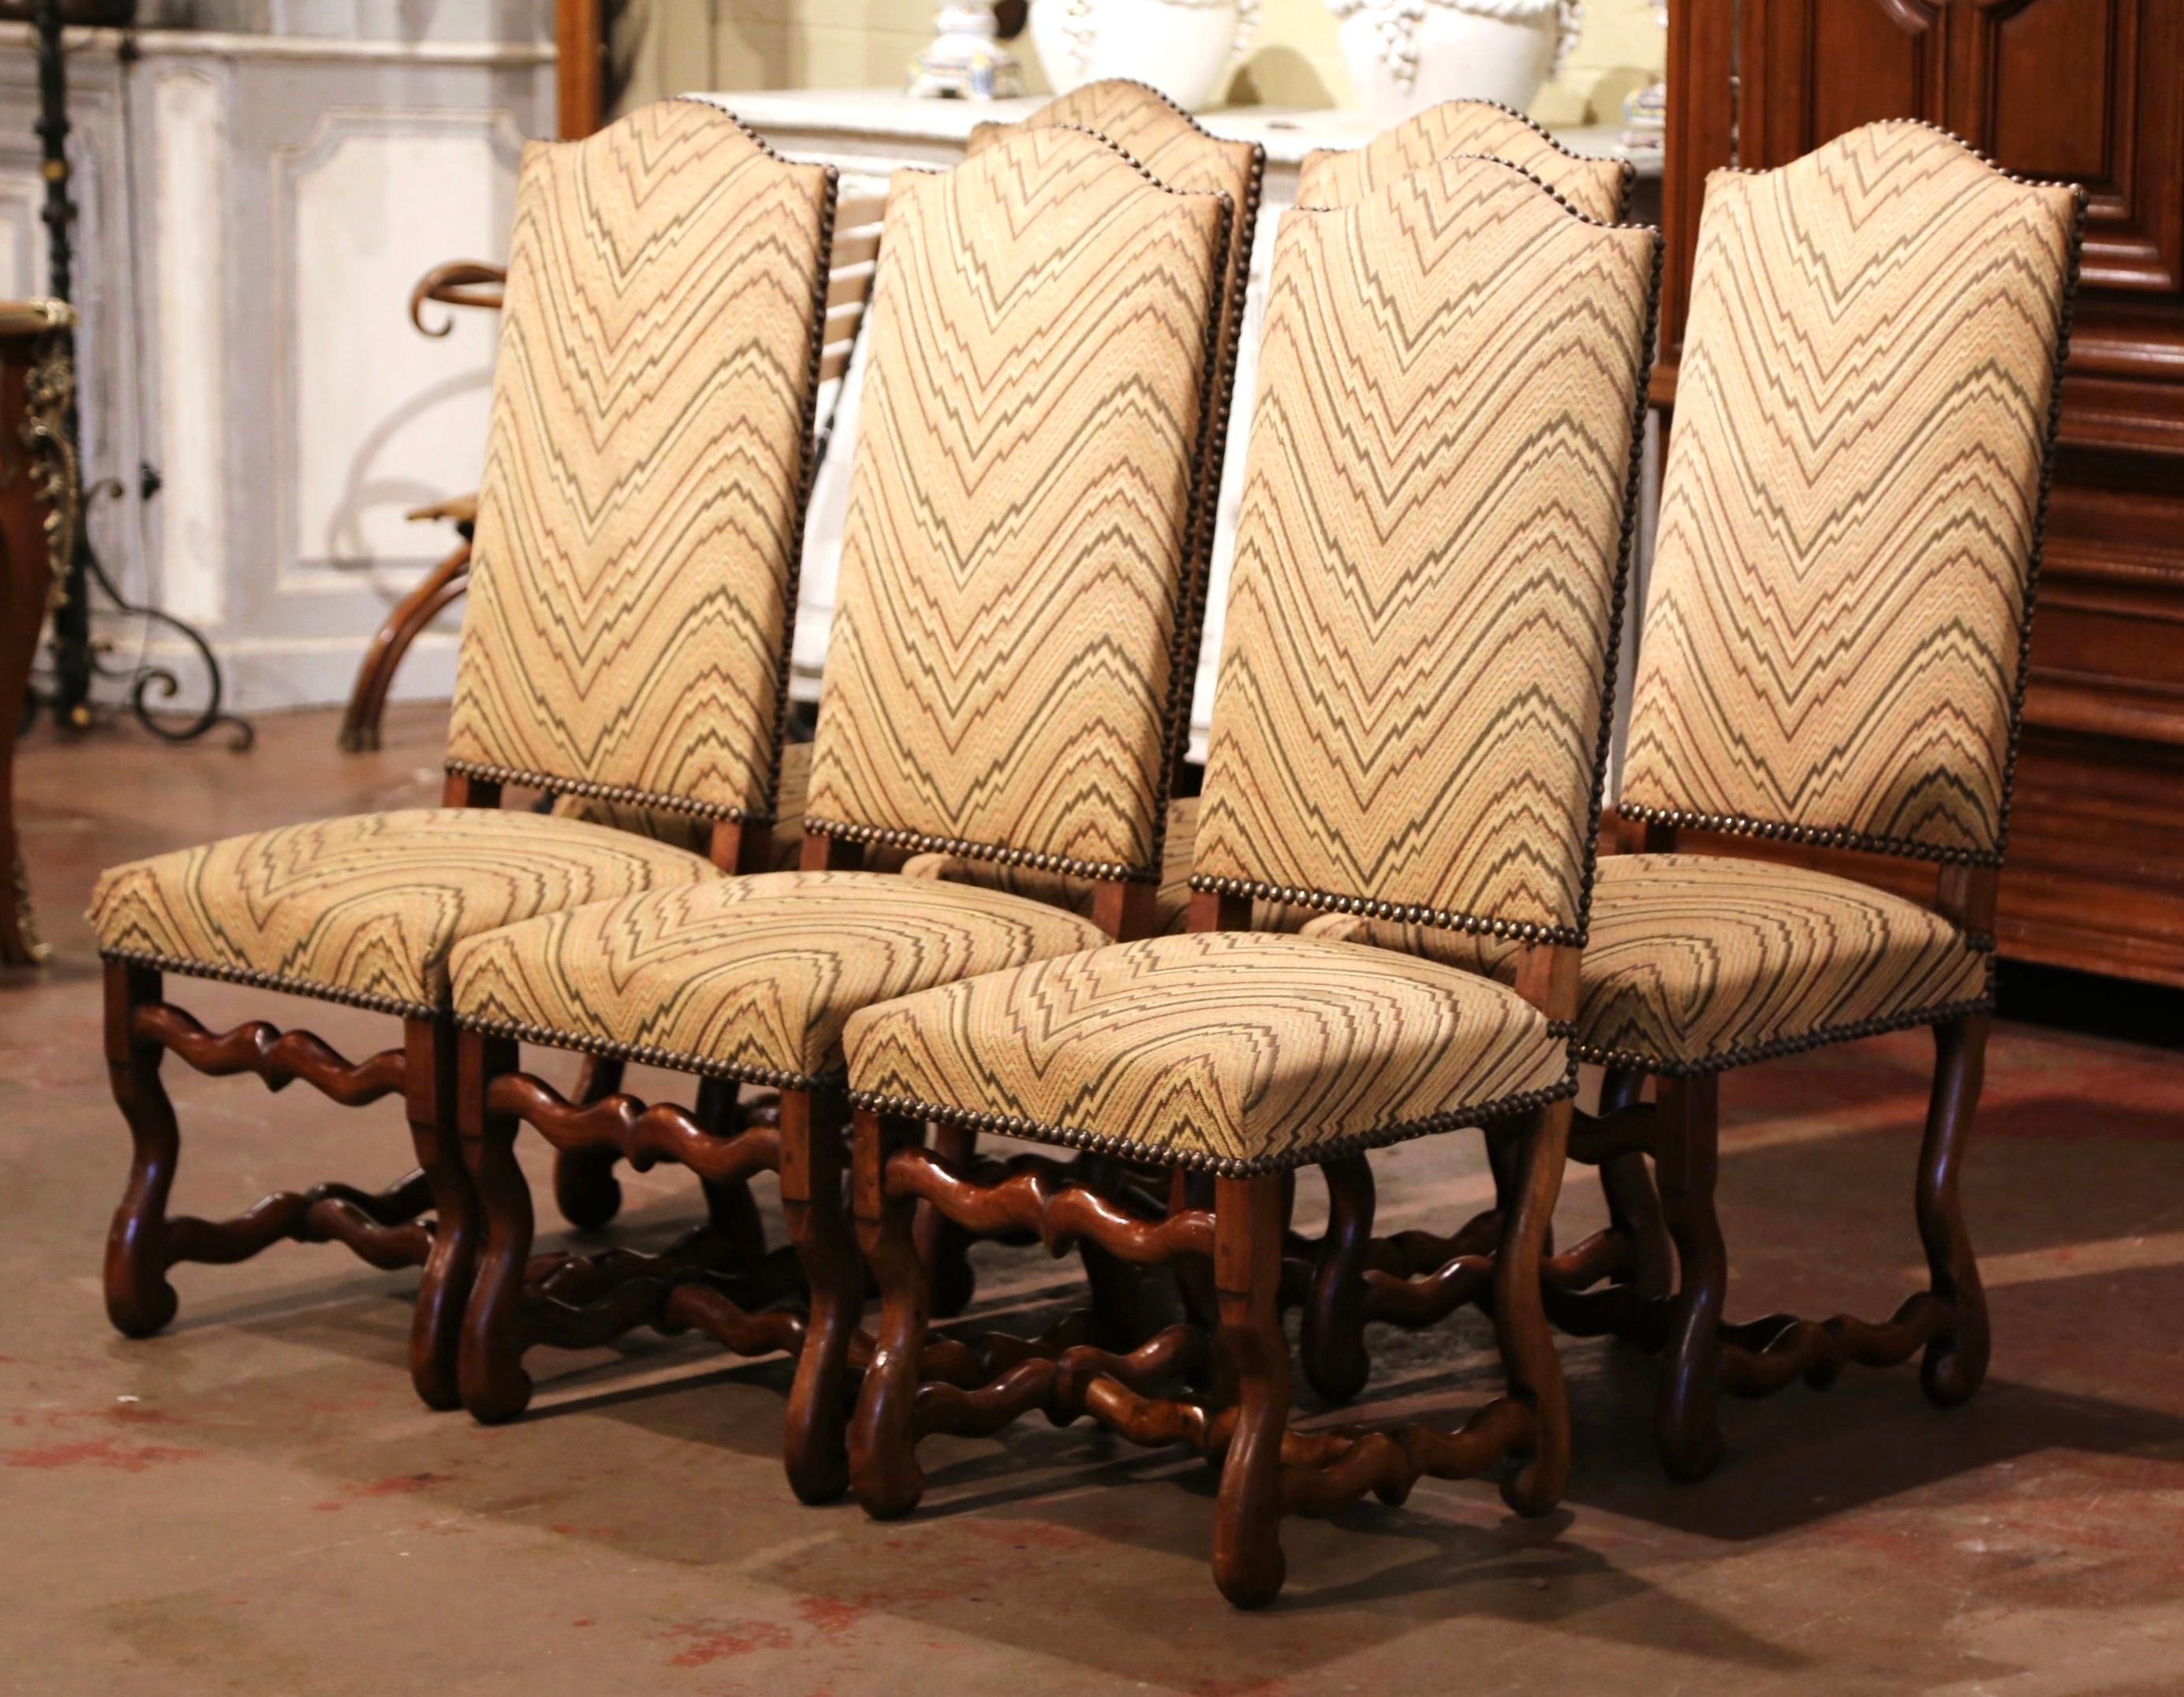 Ces élégantes chaises d'appoint ont été fabriquées en France, vers 1950. Chaque chaise repose sur des pieds sculptés en os de mouton, avec un châssis inférieur, et présente un haut dossier arqué et incliné, ainsi qu'une assise large et profonde. Les